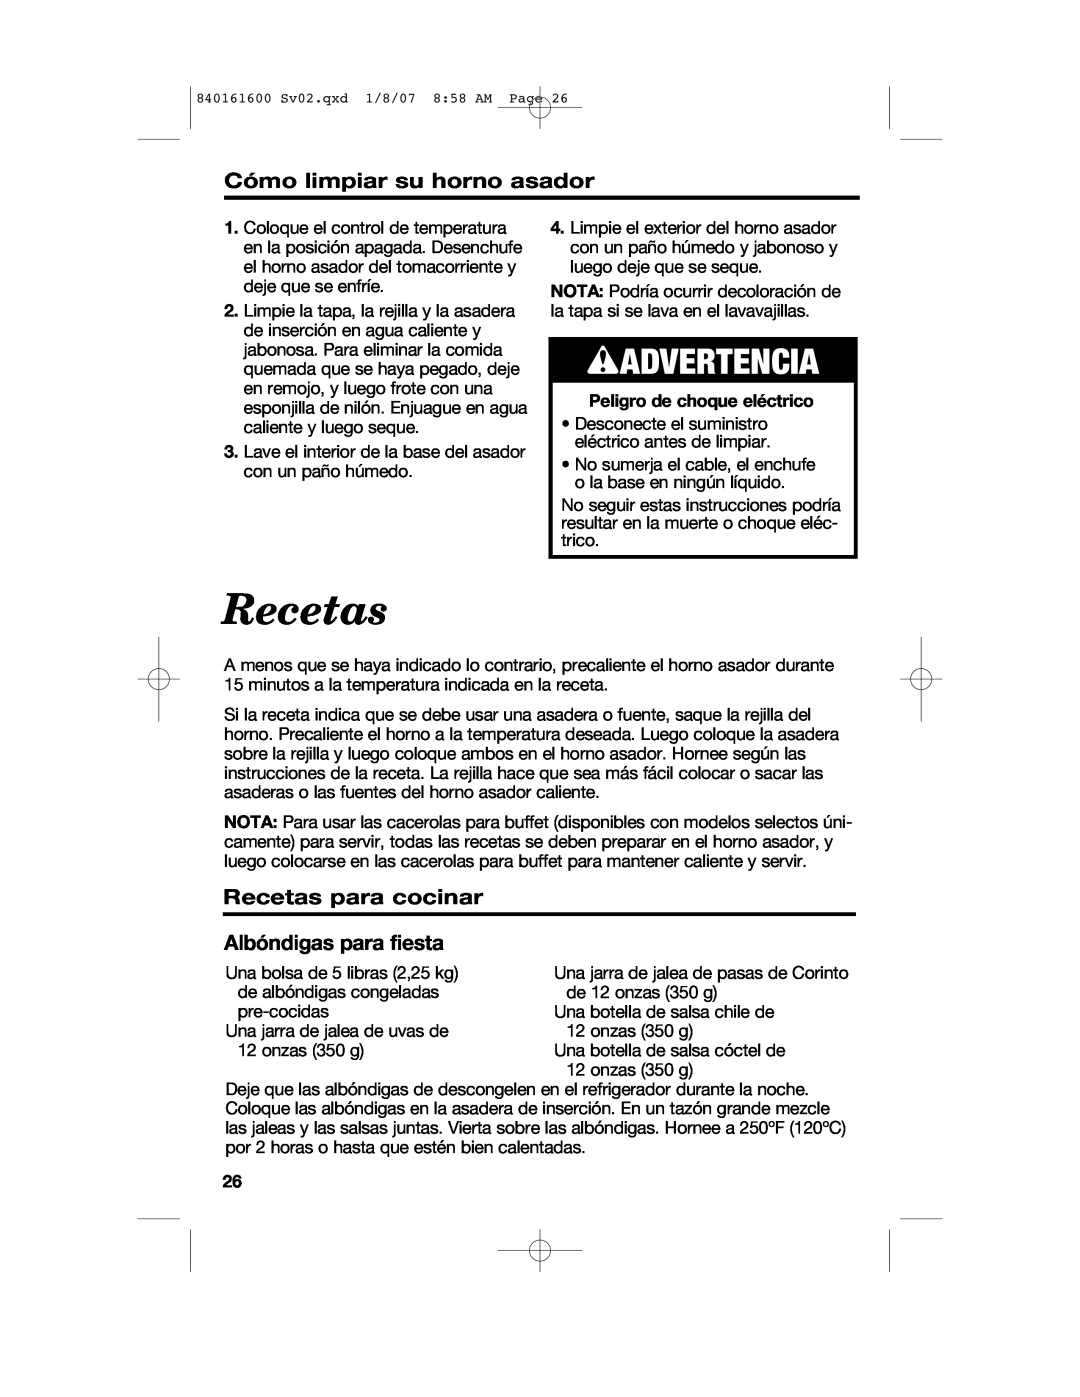 Proctor-Silex manual Cómo limpiar su horno asador, 840161600 Sv02.qxd 1/8/07 8 58 AM Page 